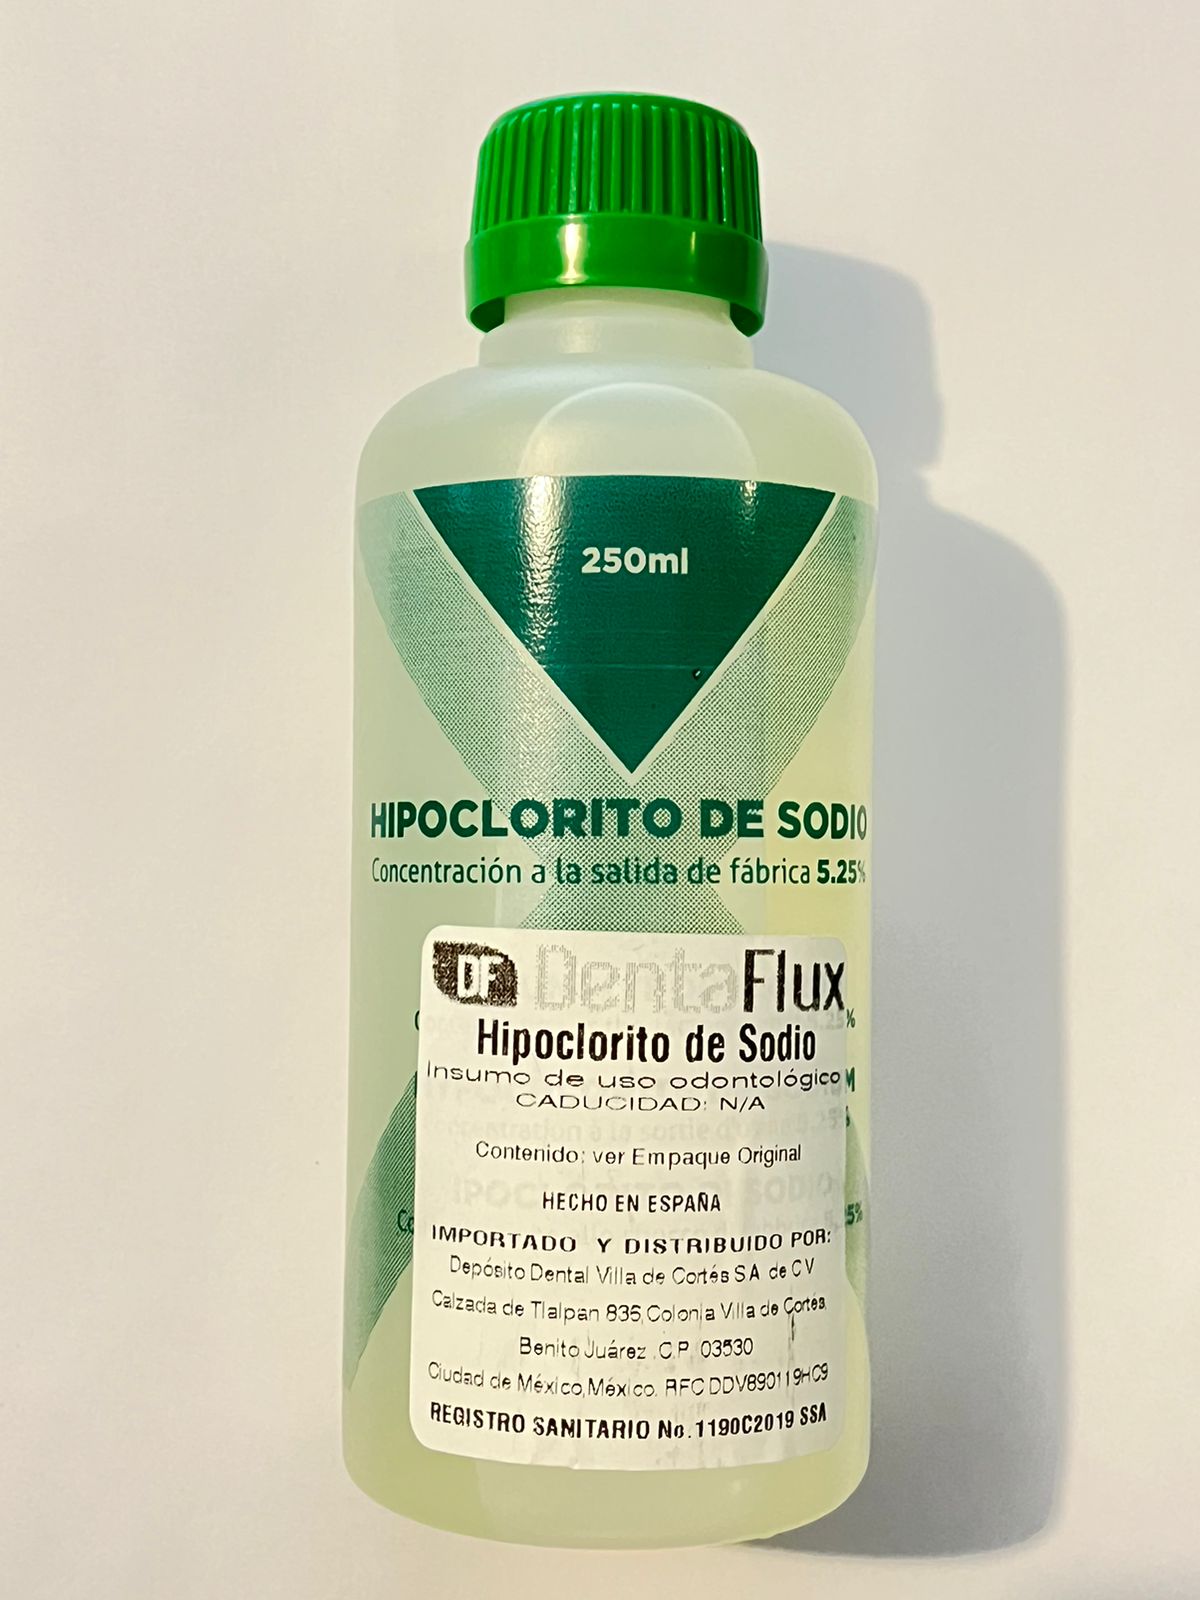 Hipoclorito de sodio 250ml concentracion 5.25% DENTAFLUX